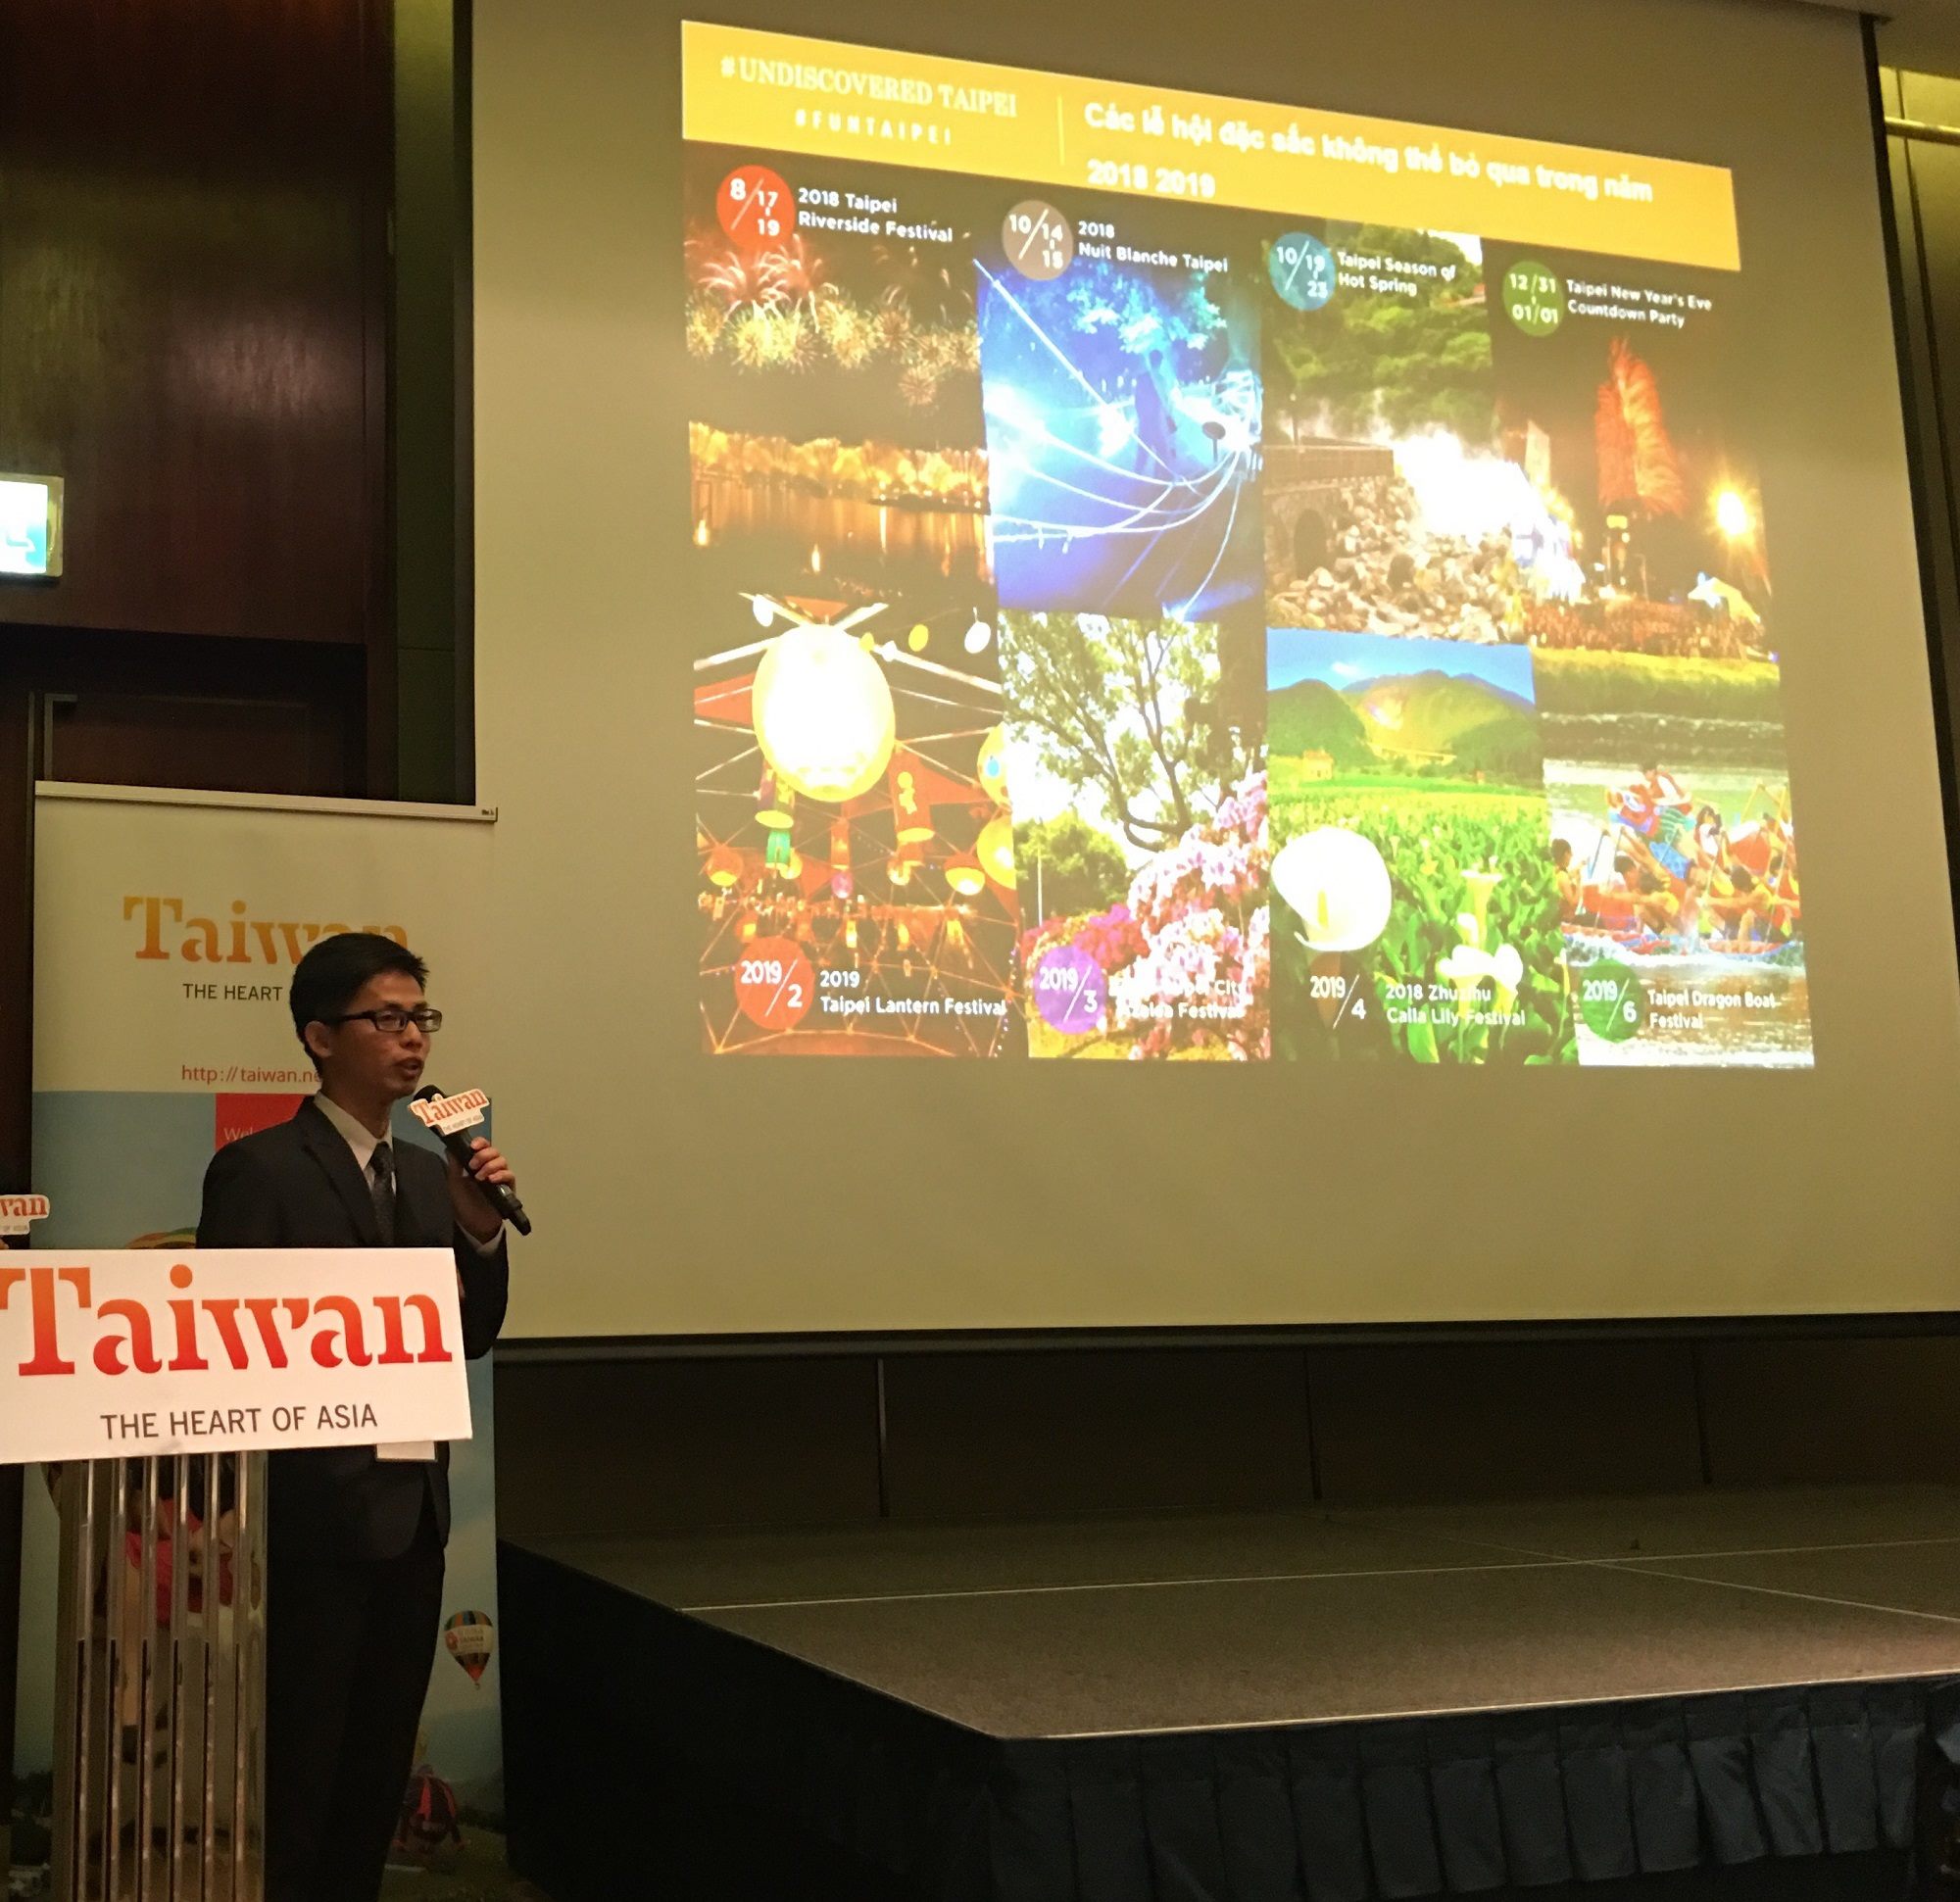 臺北市政府觀傳局代表推薦FUN_TAIPEI美食、購物、消暑、美圖之旅及臺北市熱鬧節慶活動。